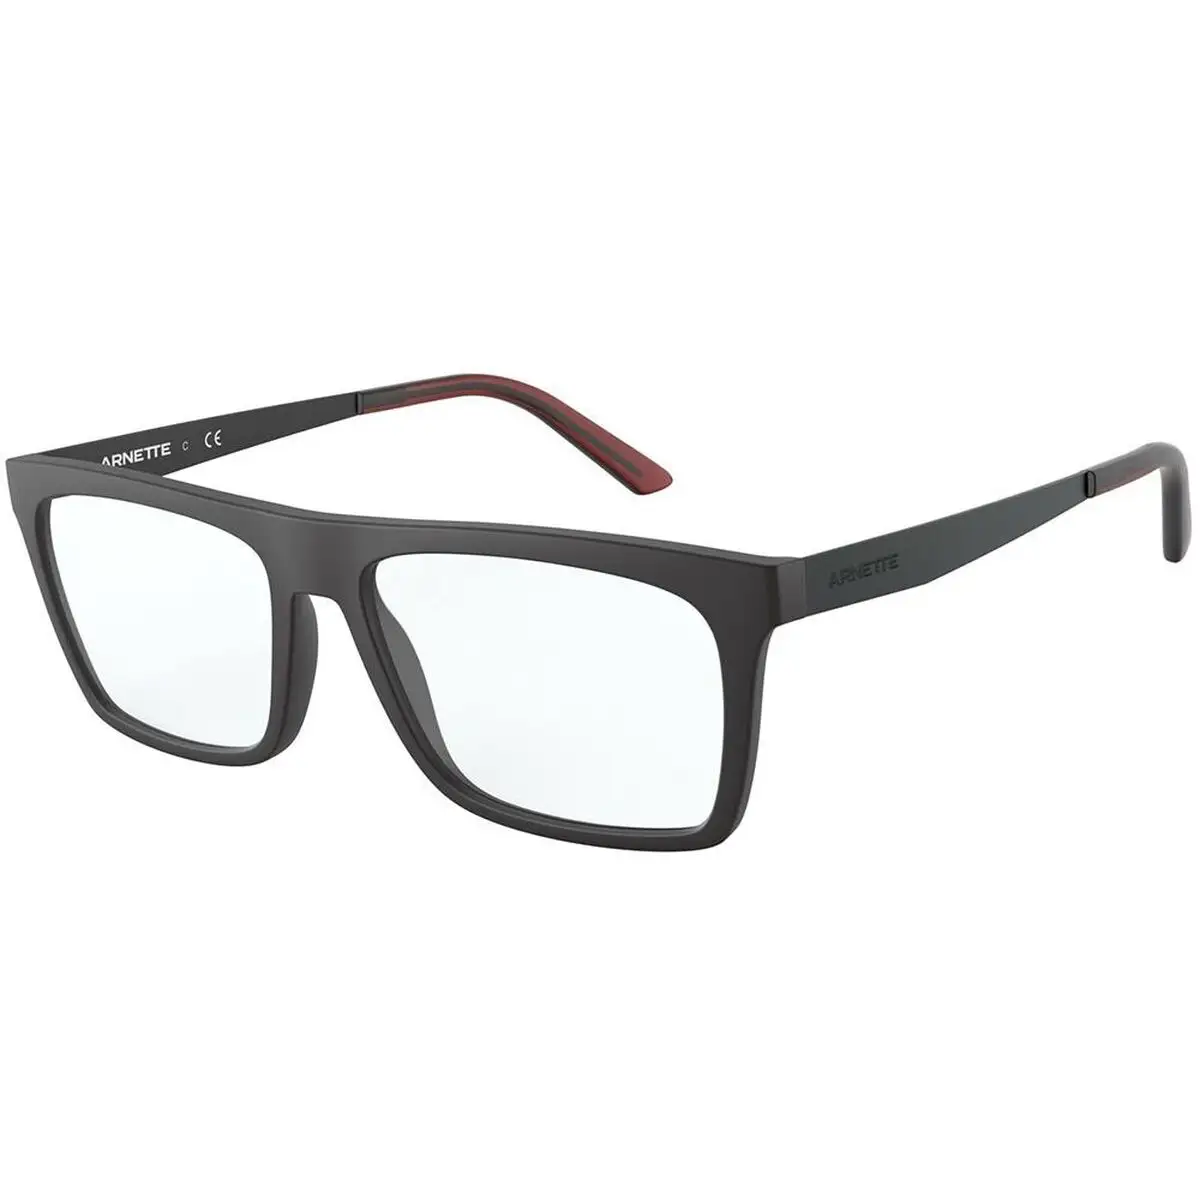 Monture de lunettes homme arnette murazzi an 7174_4283. Découvrez DIAYTAR SENEGAL - Votre Destination de Shopping Inspirée. Naviguez à travers nos offres variées et trouvez des articles qui reflètent votre personnalité et vos goûts.